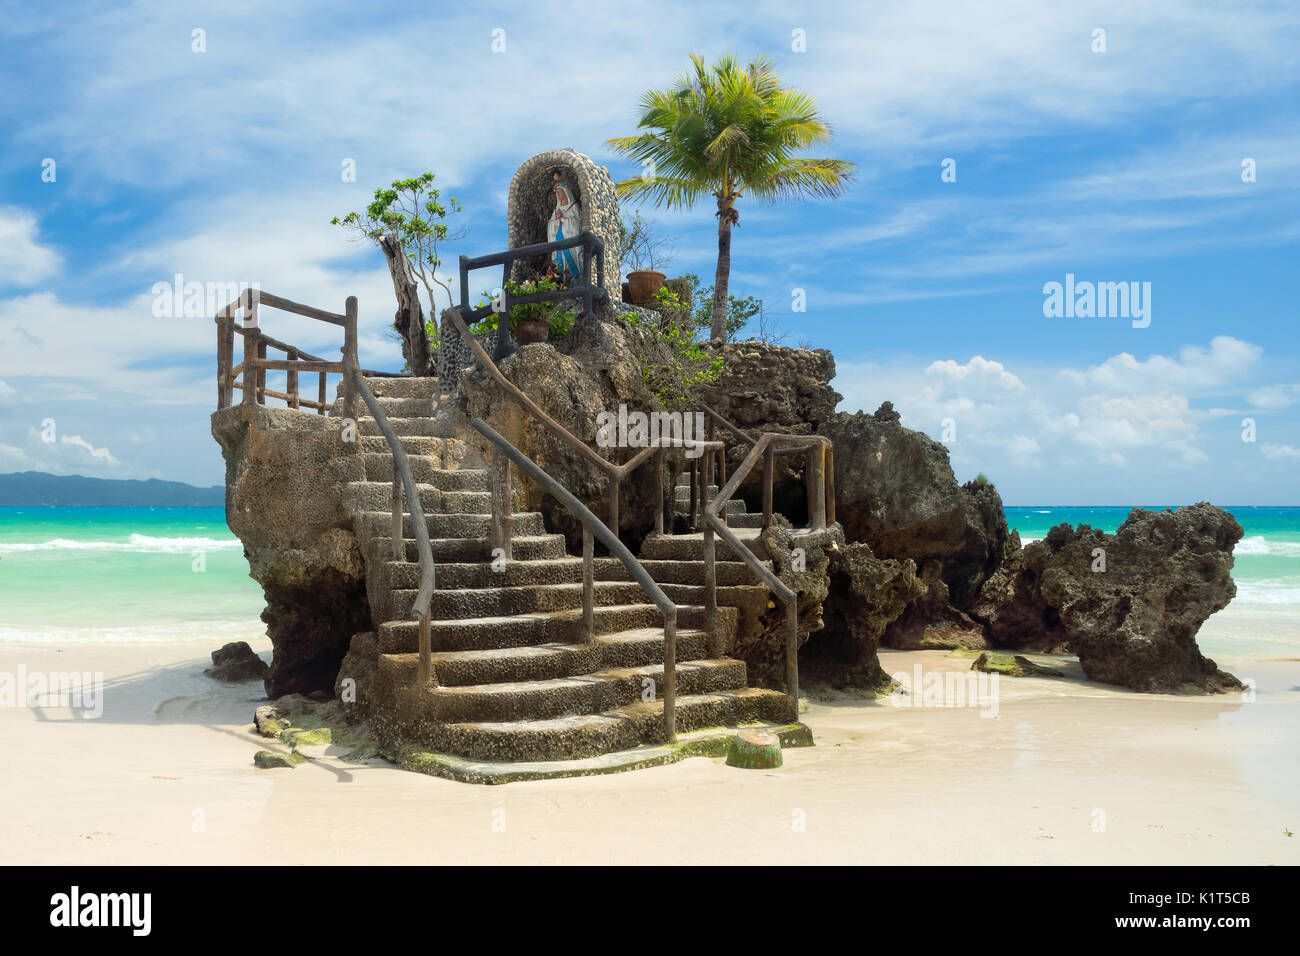 Willy's rock sur la célèbre plage de sable blanc est l'un des monuments les plus reconnaissables de l'île de Boracay, philippines Banque D'Images